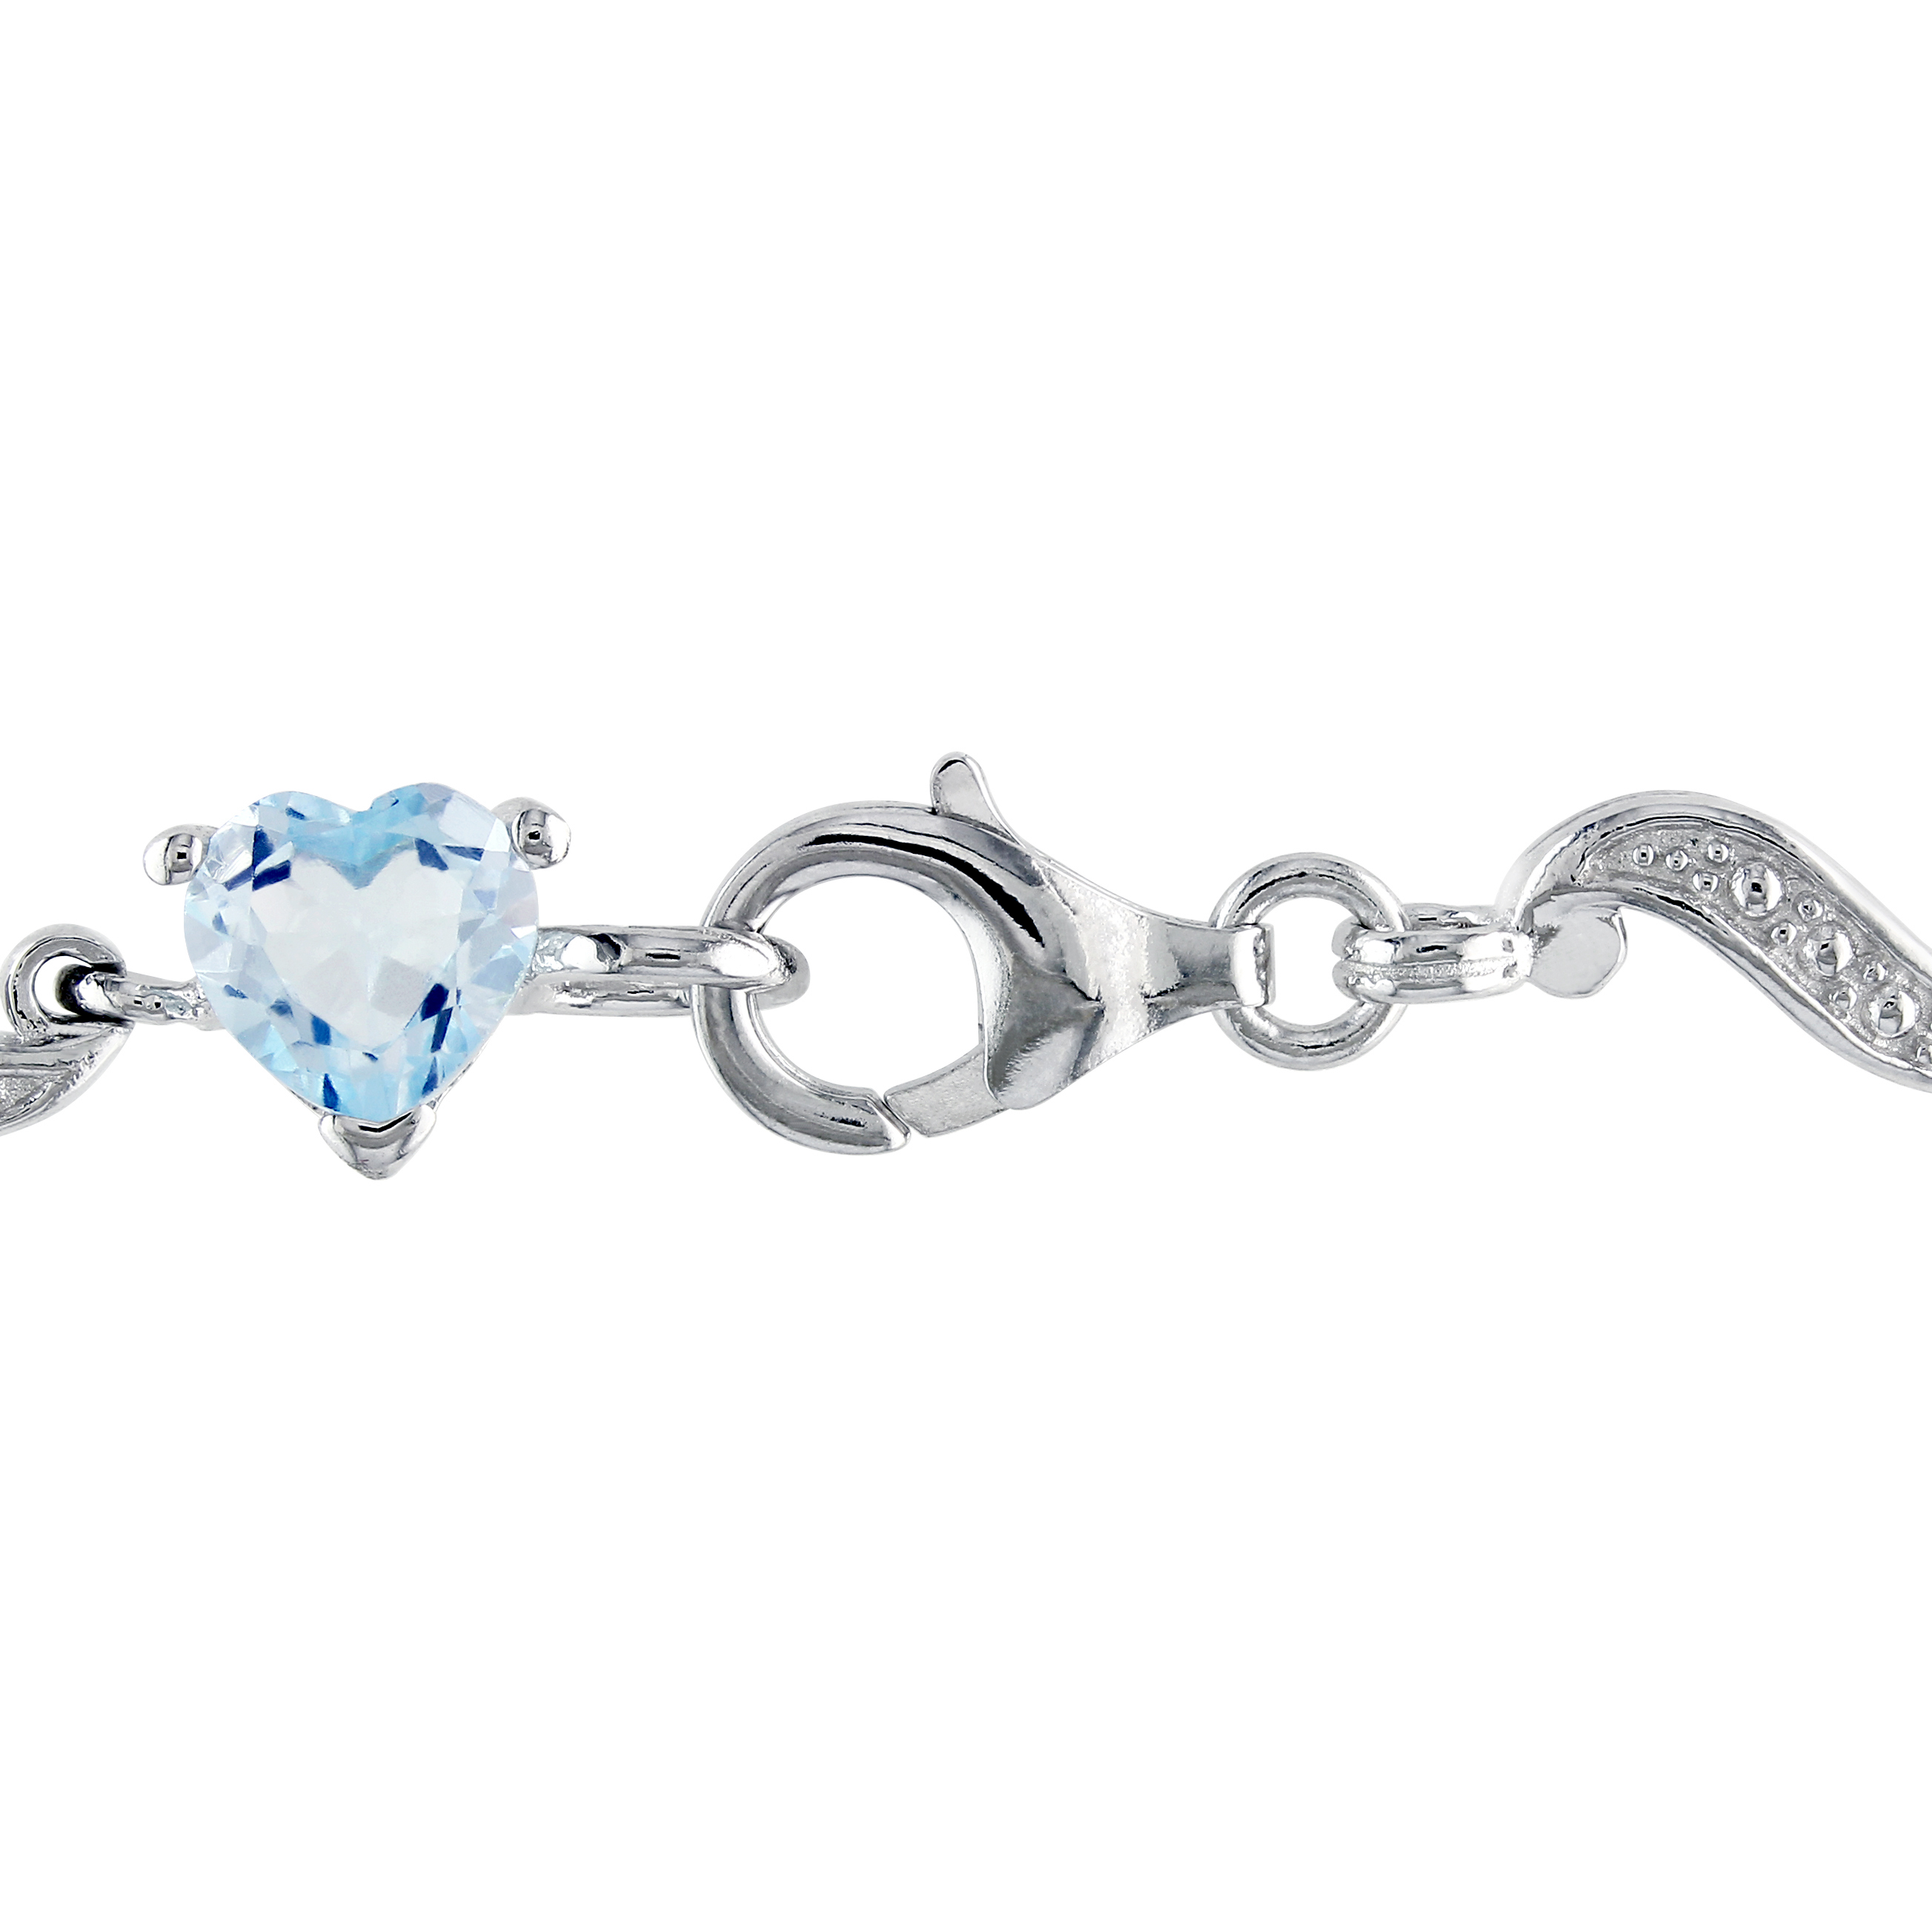 8 2/5 CT TGW Blue Topaz and Diamond Heart S-Link Bracelet in Sterling Silver - 7 in.